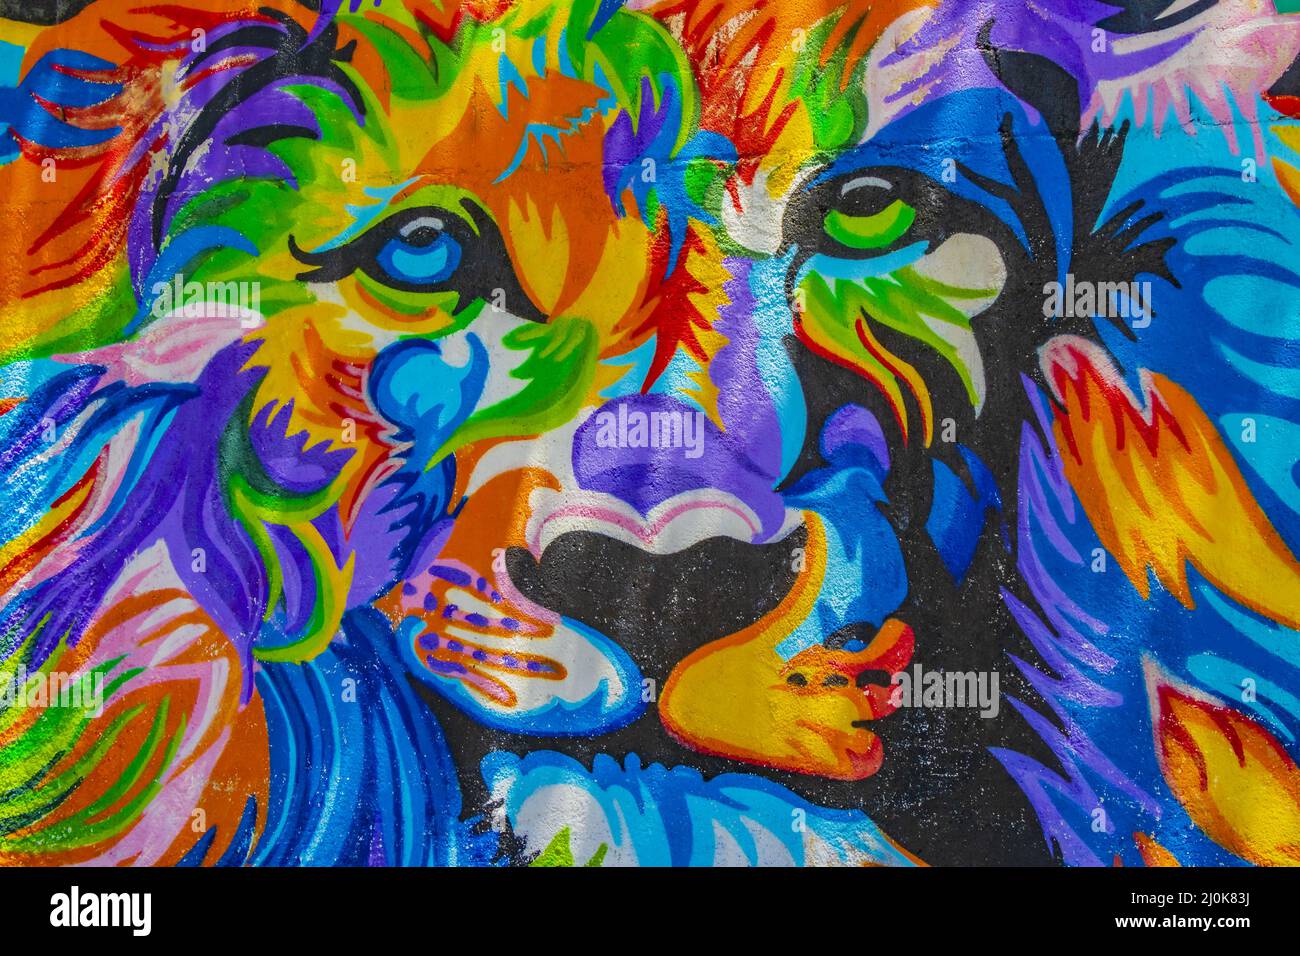 Pareti artistiche con colorati dipinti di leoni graffiti Playa del Carmen. Foto Stock